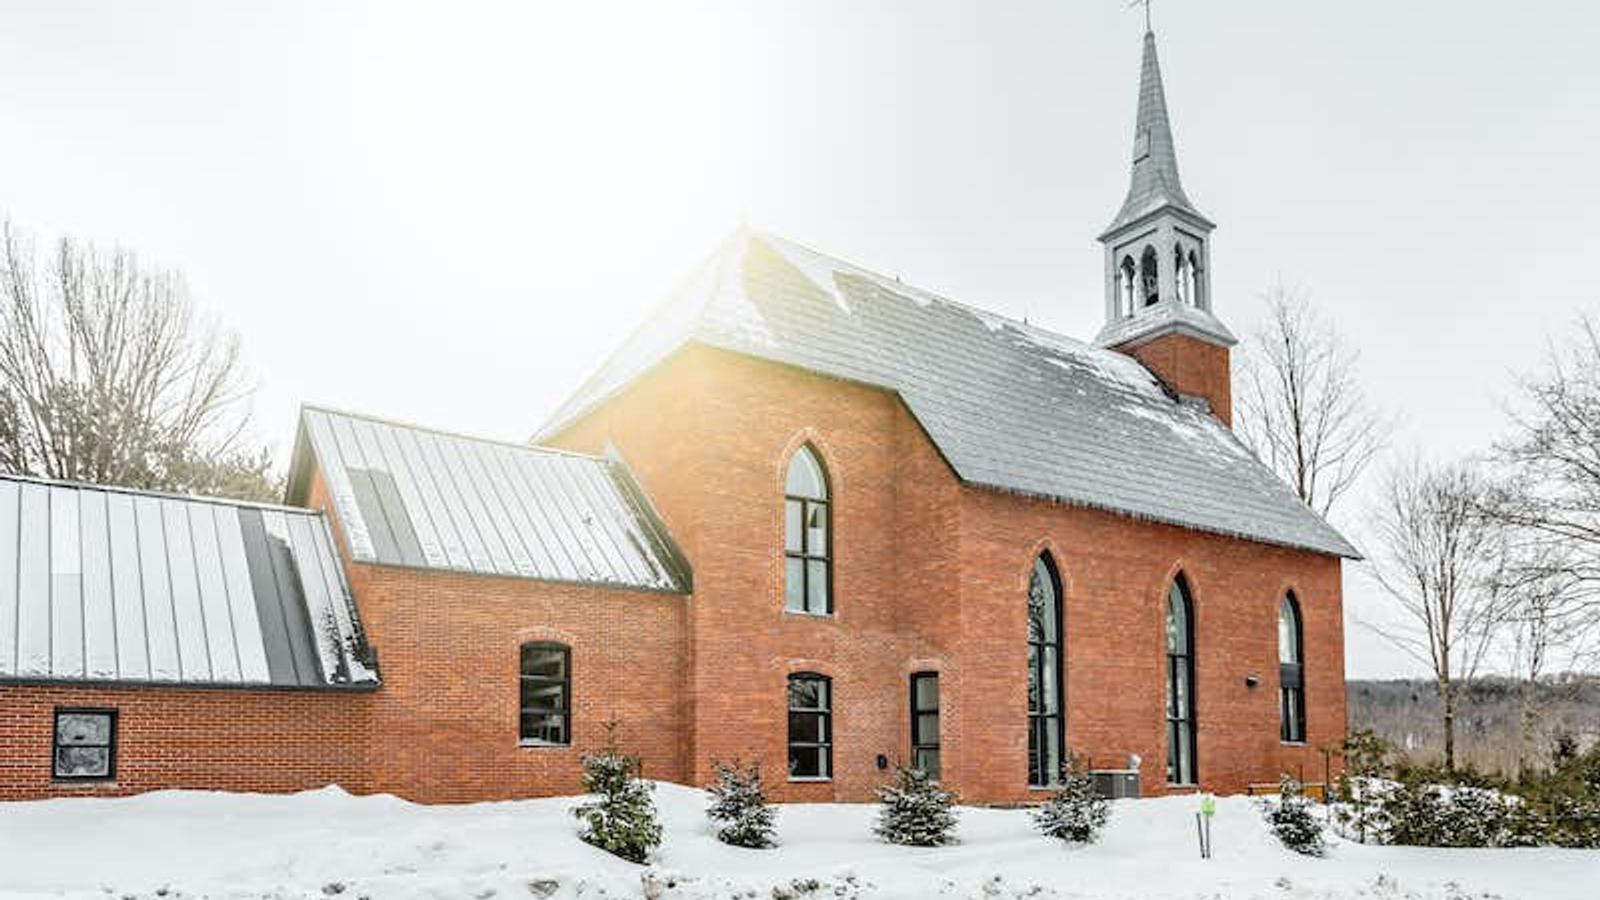  Avant et après : cette église du Québec a été transformée en une épatante demeure moderne